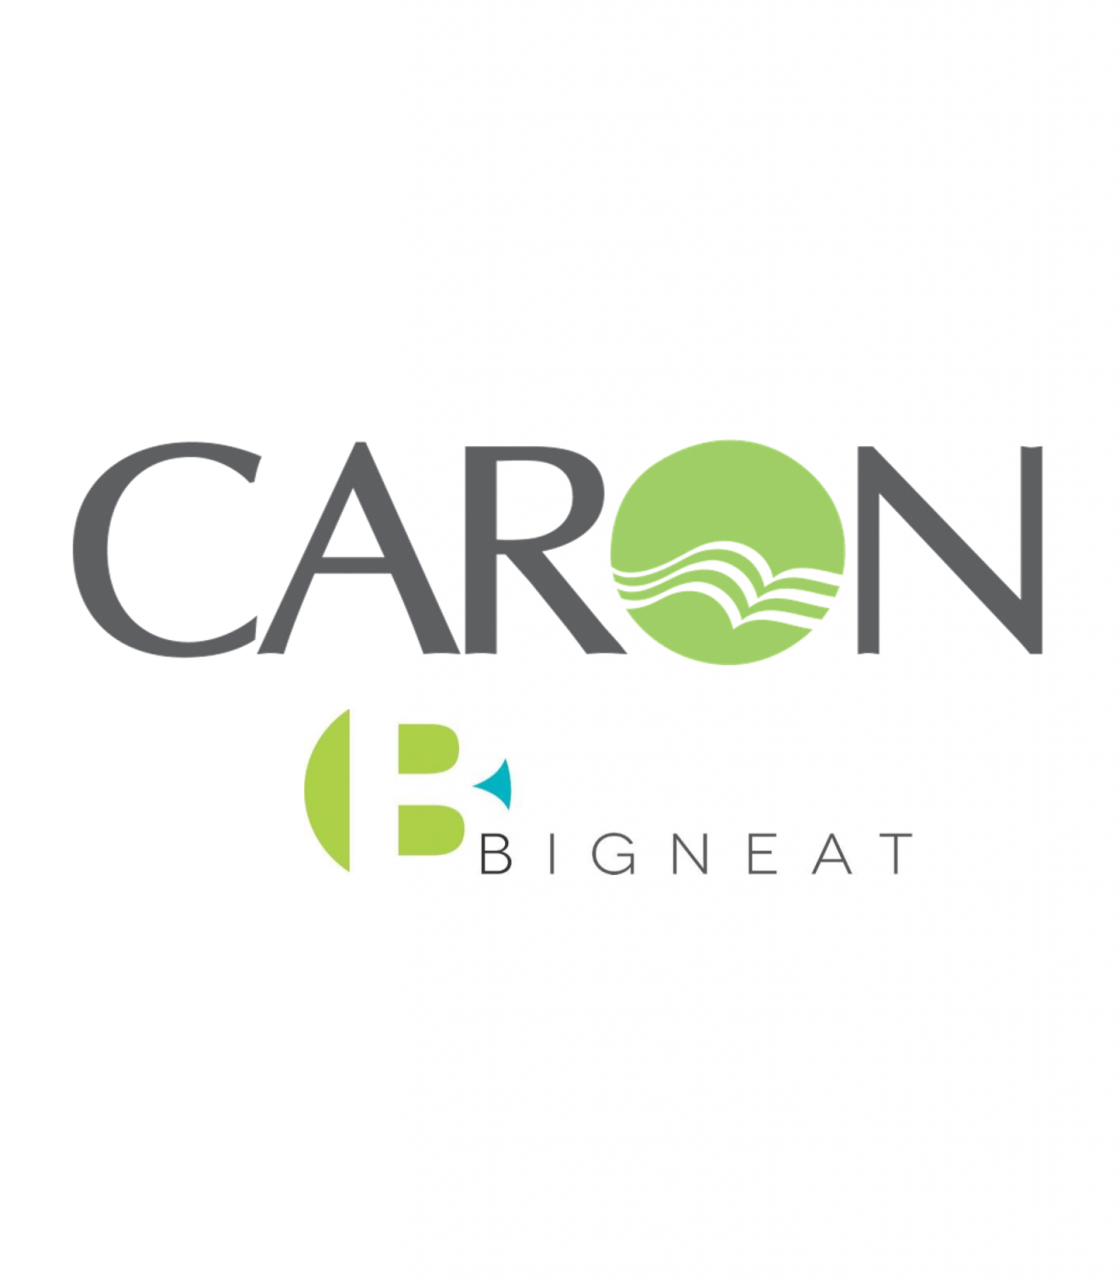 CaronBigneat-Logos3